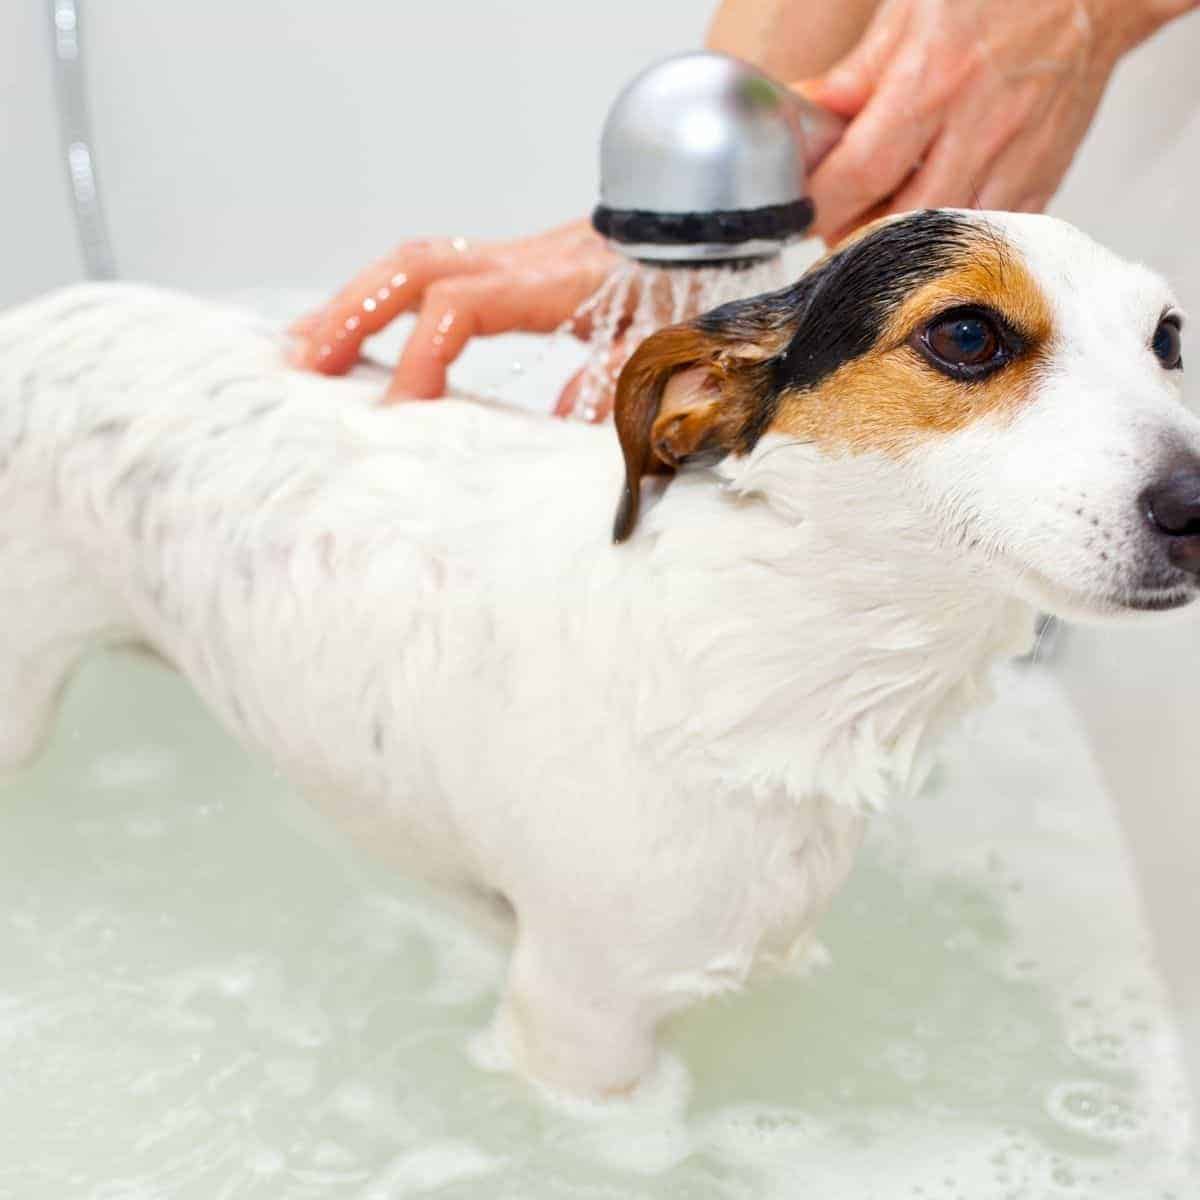 bathing a dog